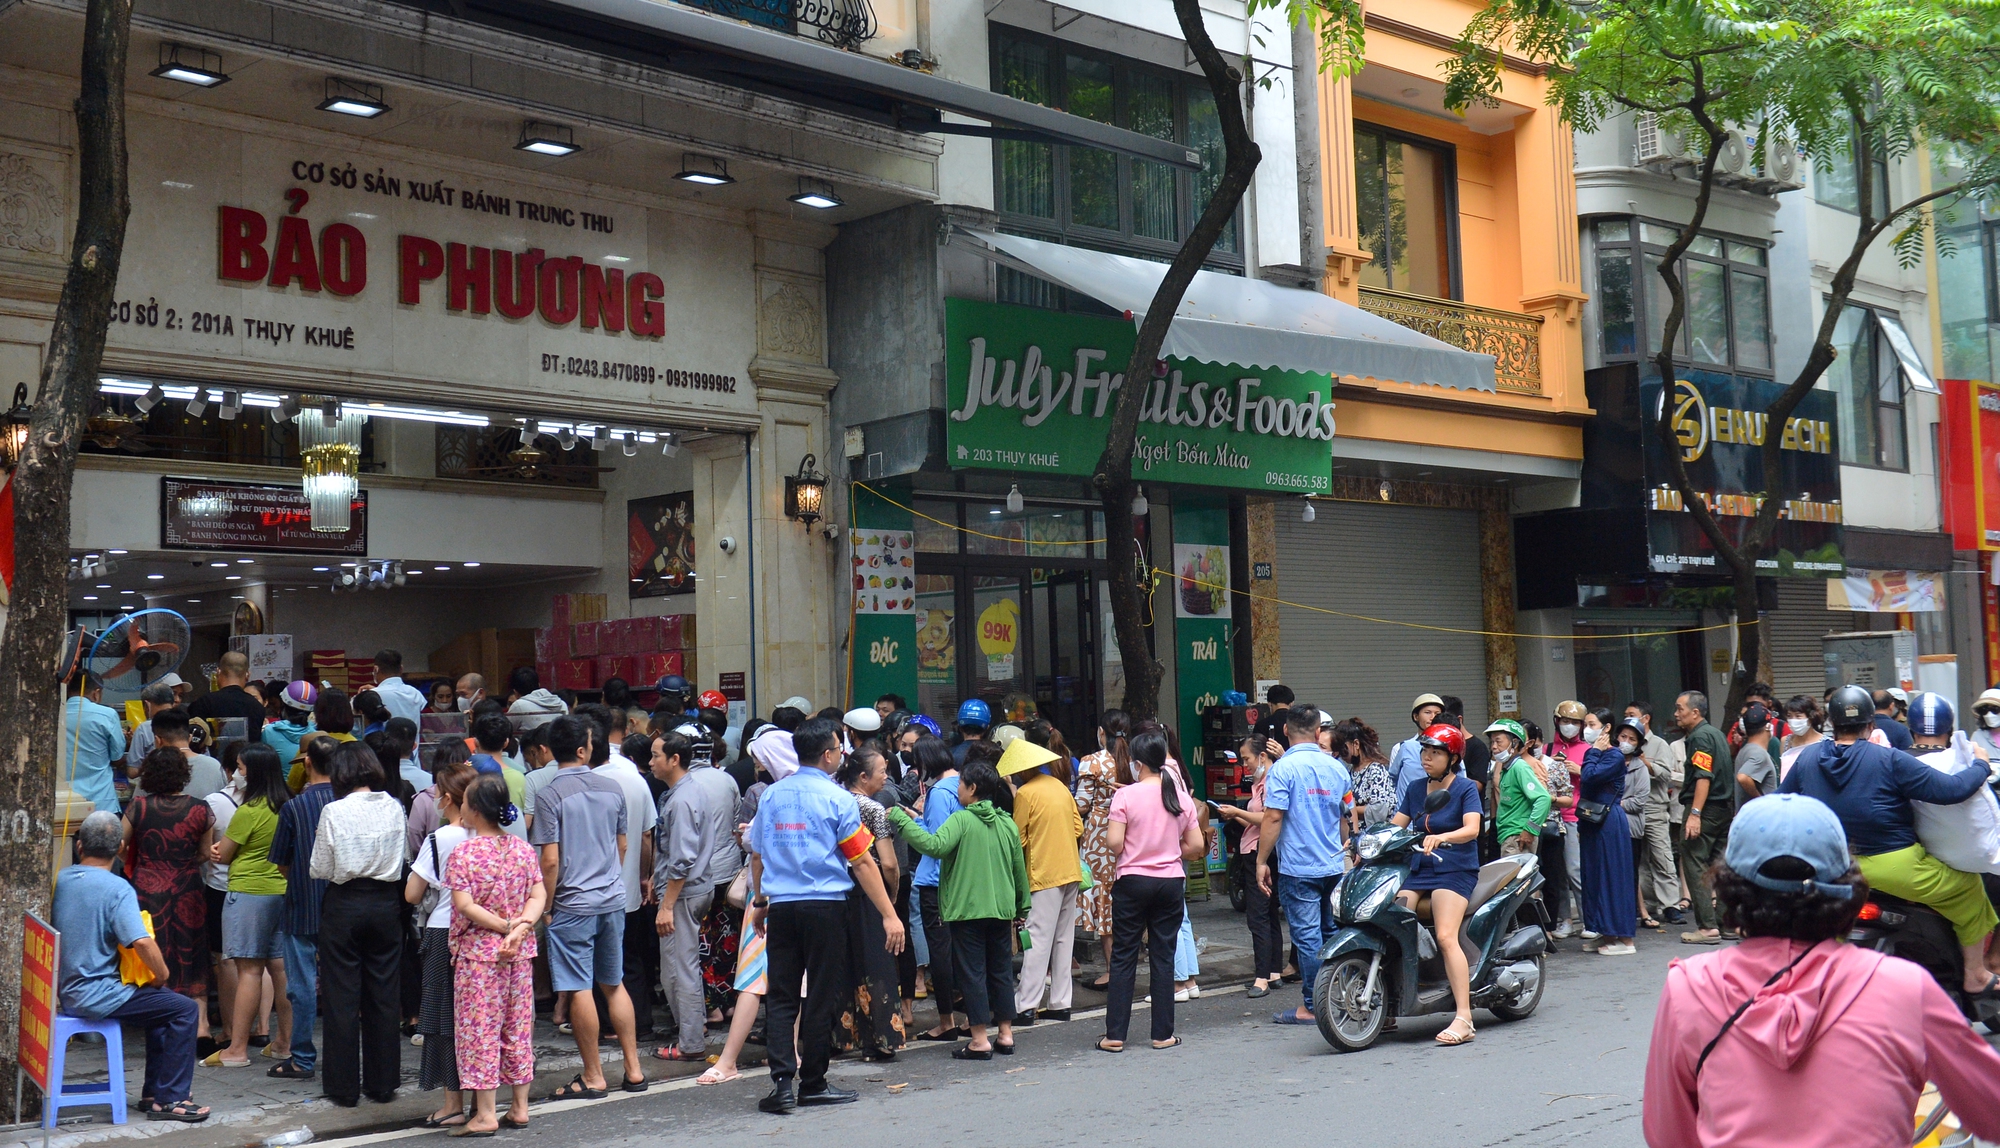 Hà Nội: Người dân xếp hàng dài, chờ cả tiếng đợi mua bánh trung thu truyền thống - Ảnh 1.